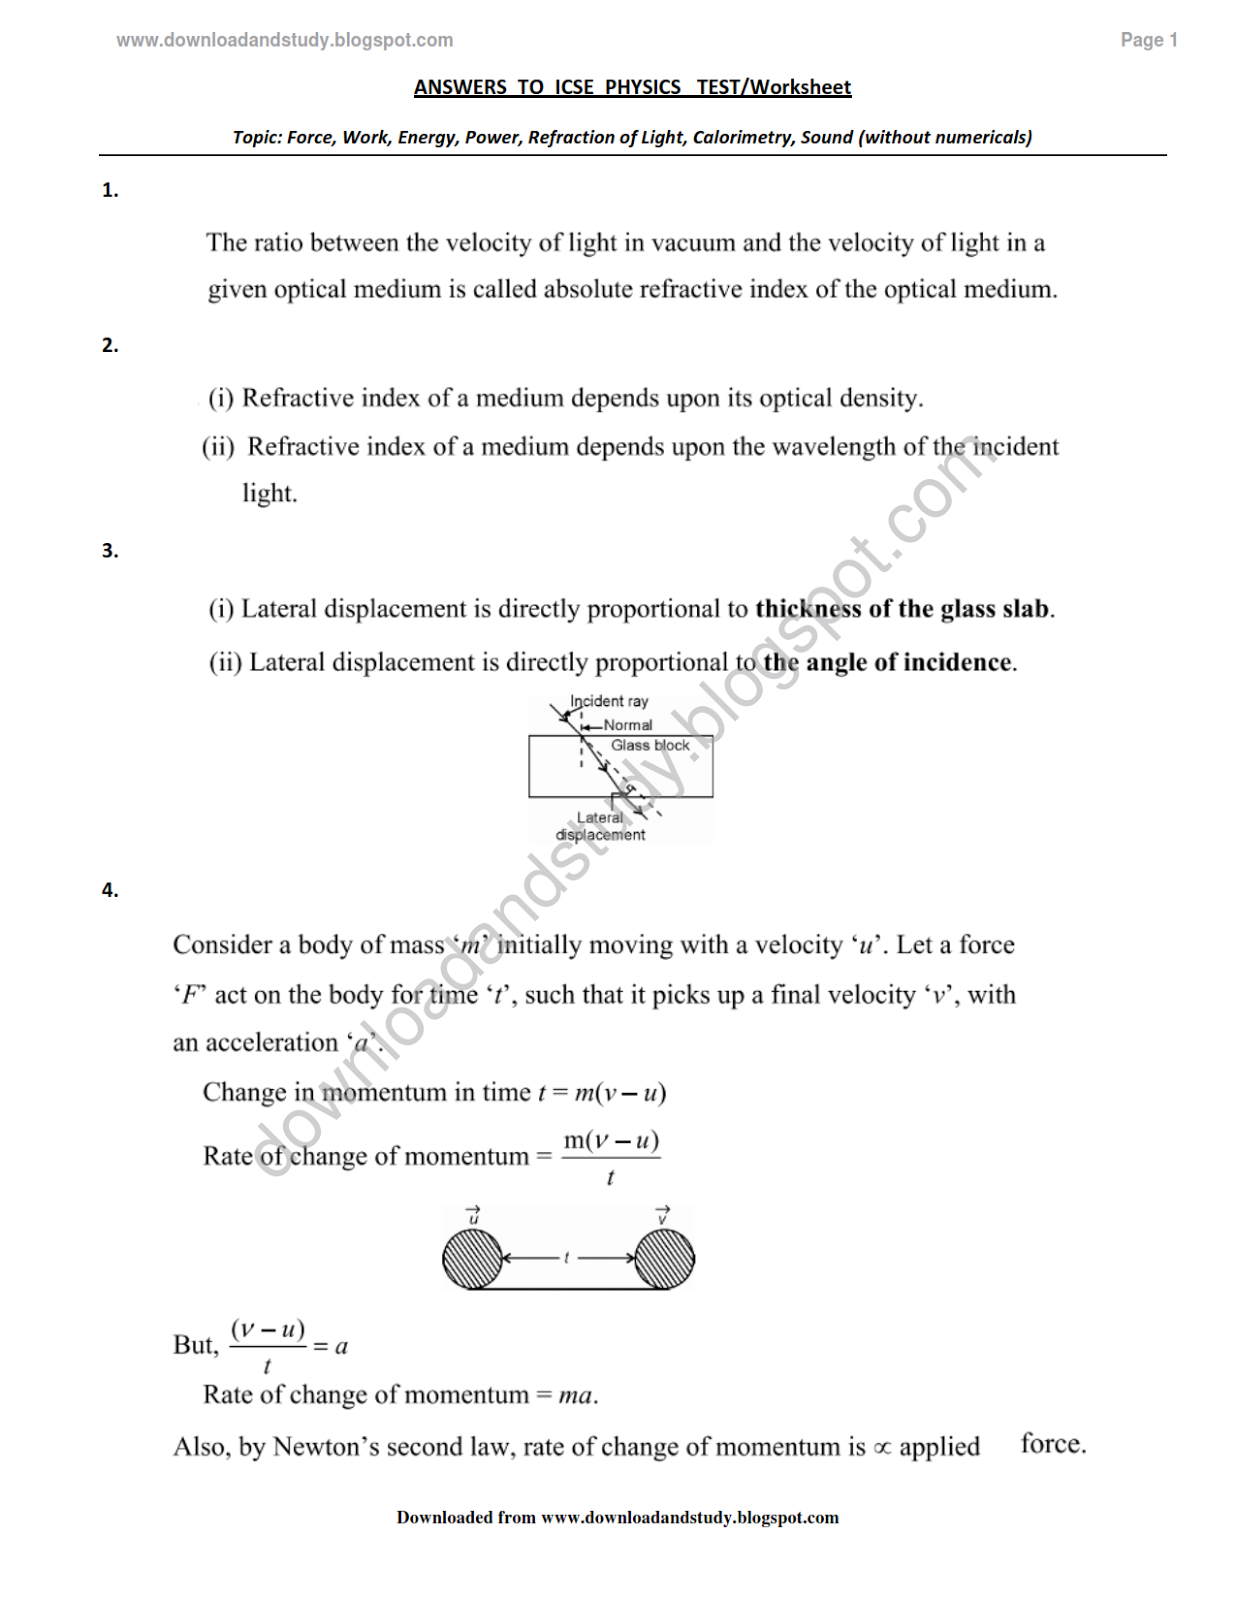 Physics Refraction Worksheet Image